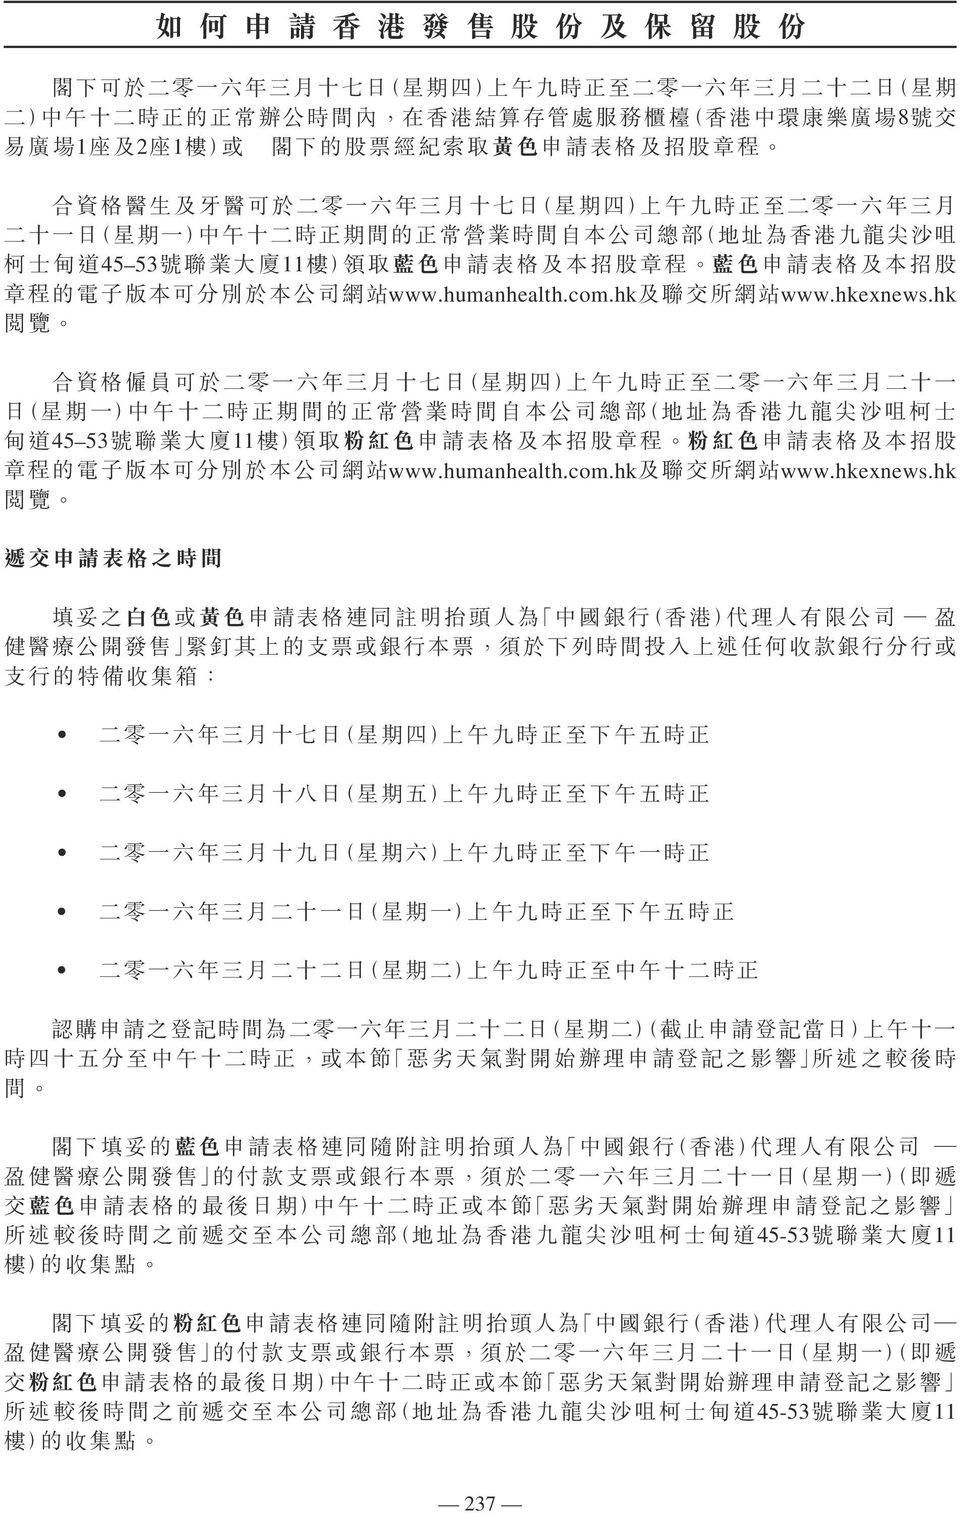 廈 11 樓 ) 領 取 申 請 表 格 及 本 招 股 章 程 申 請 表 格 及 本 招 股 章 程 的 電 子 版 本 可 分 別 於 本 公 司 網 站 www.humanhealth.com.hk 及 聯 交 所 網 站 www.hkexnews.